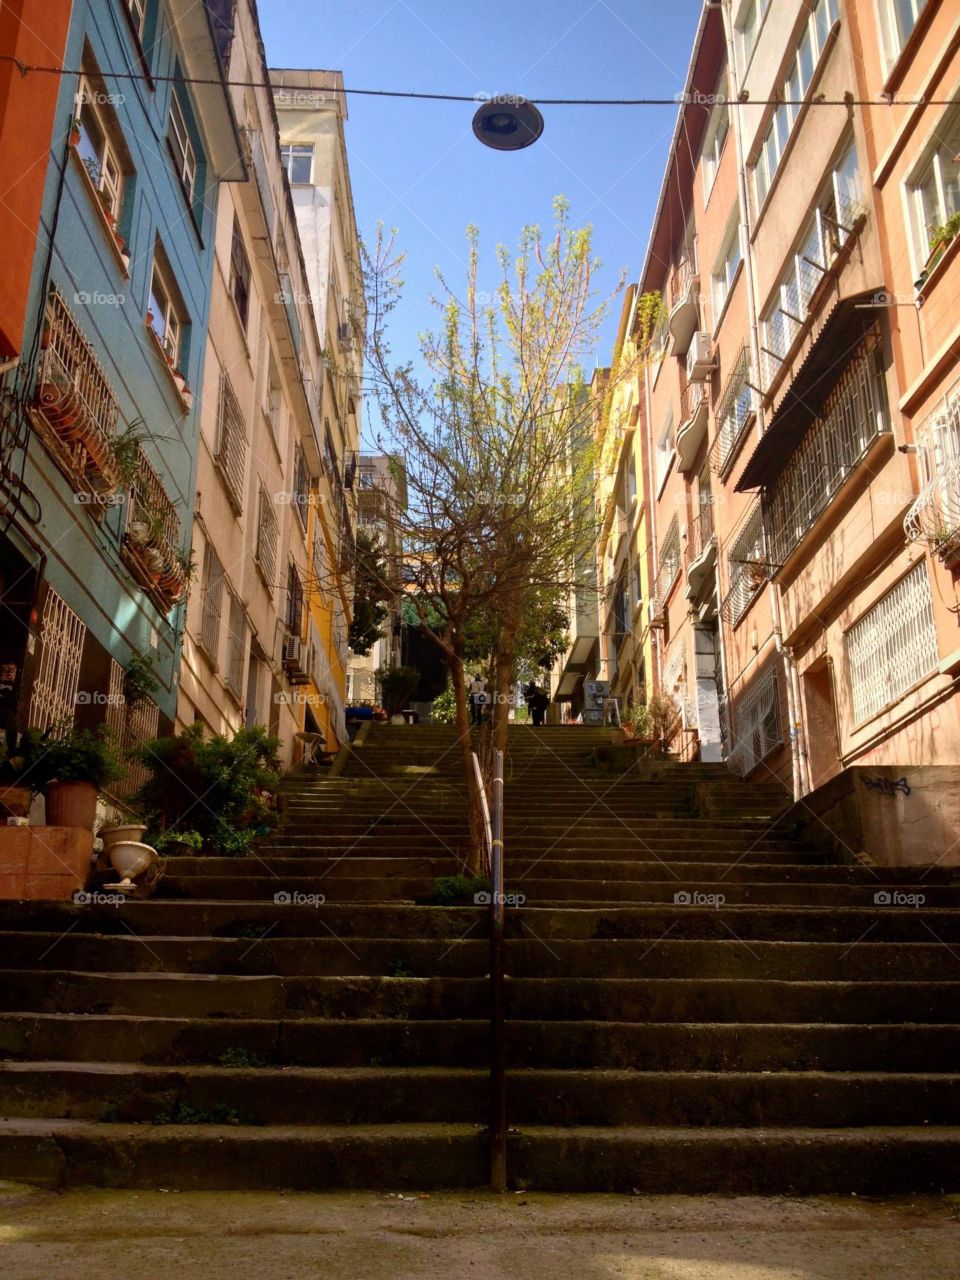 Istanbul Hidden Stairwell 